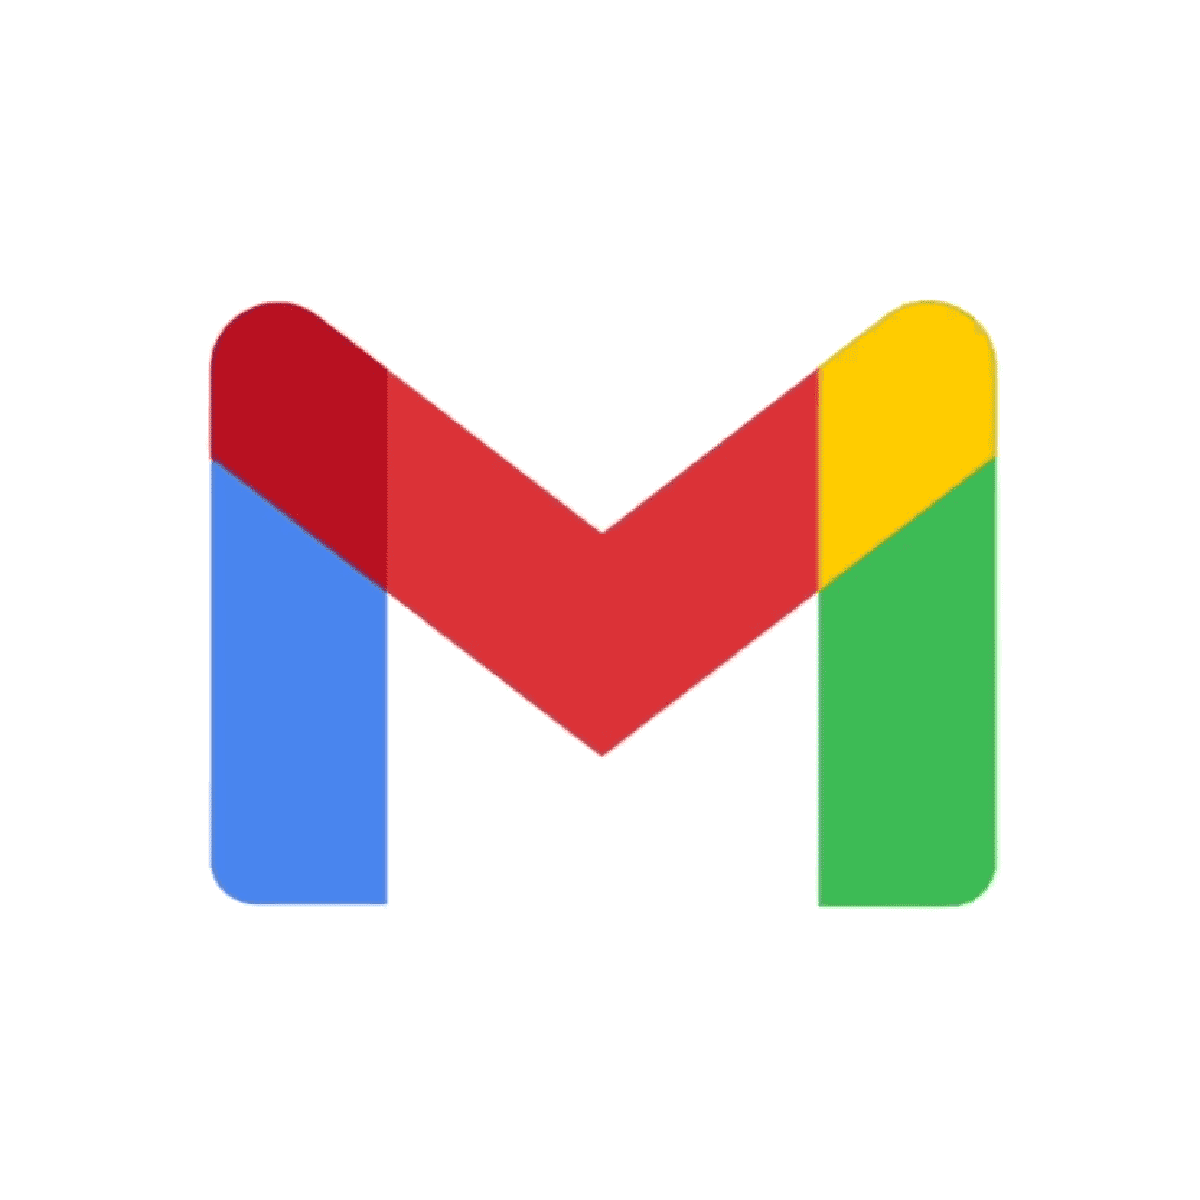 El nuevo logotipo de Gmail de Google dice adiós al sobre rojo – Panoraview